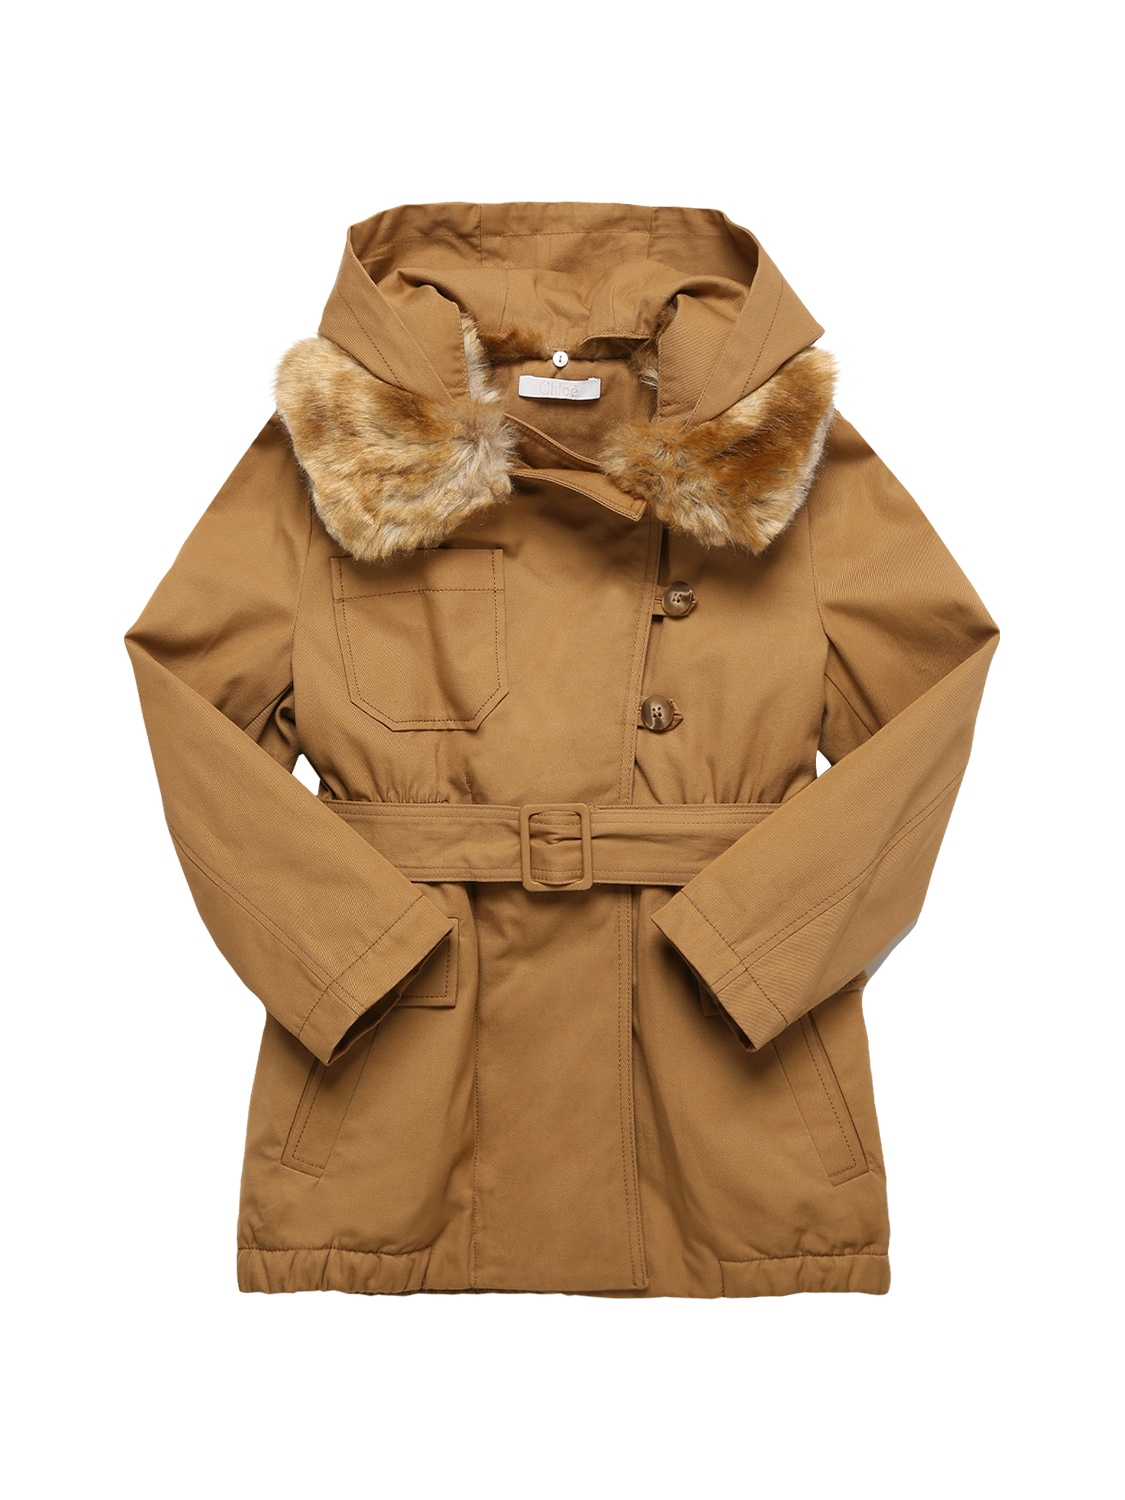 Chloé Kids' Cotton Twill Coat W/ Faux Fur Collar In Beige